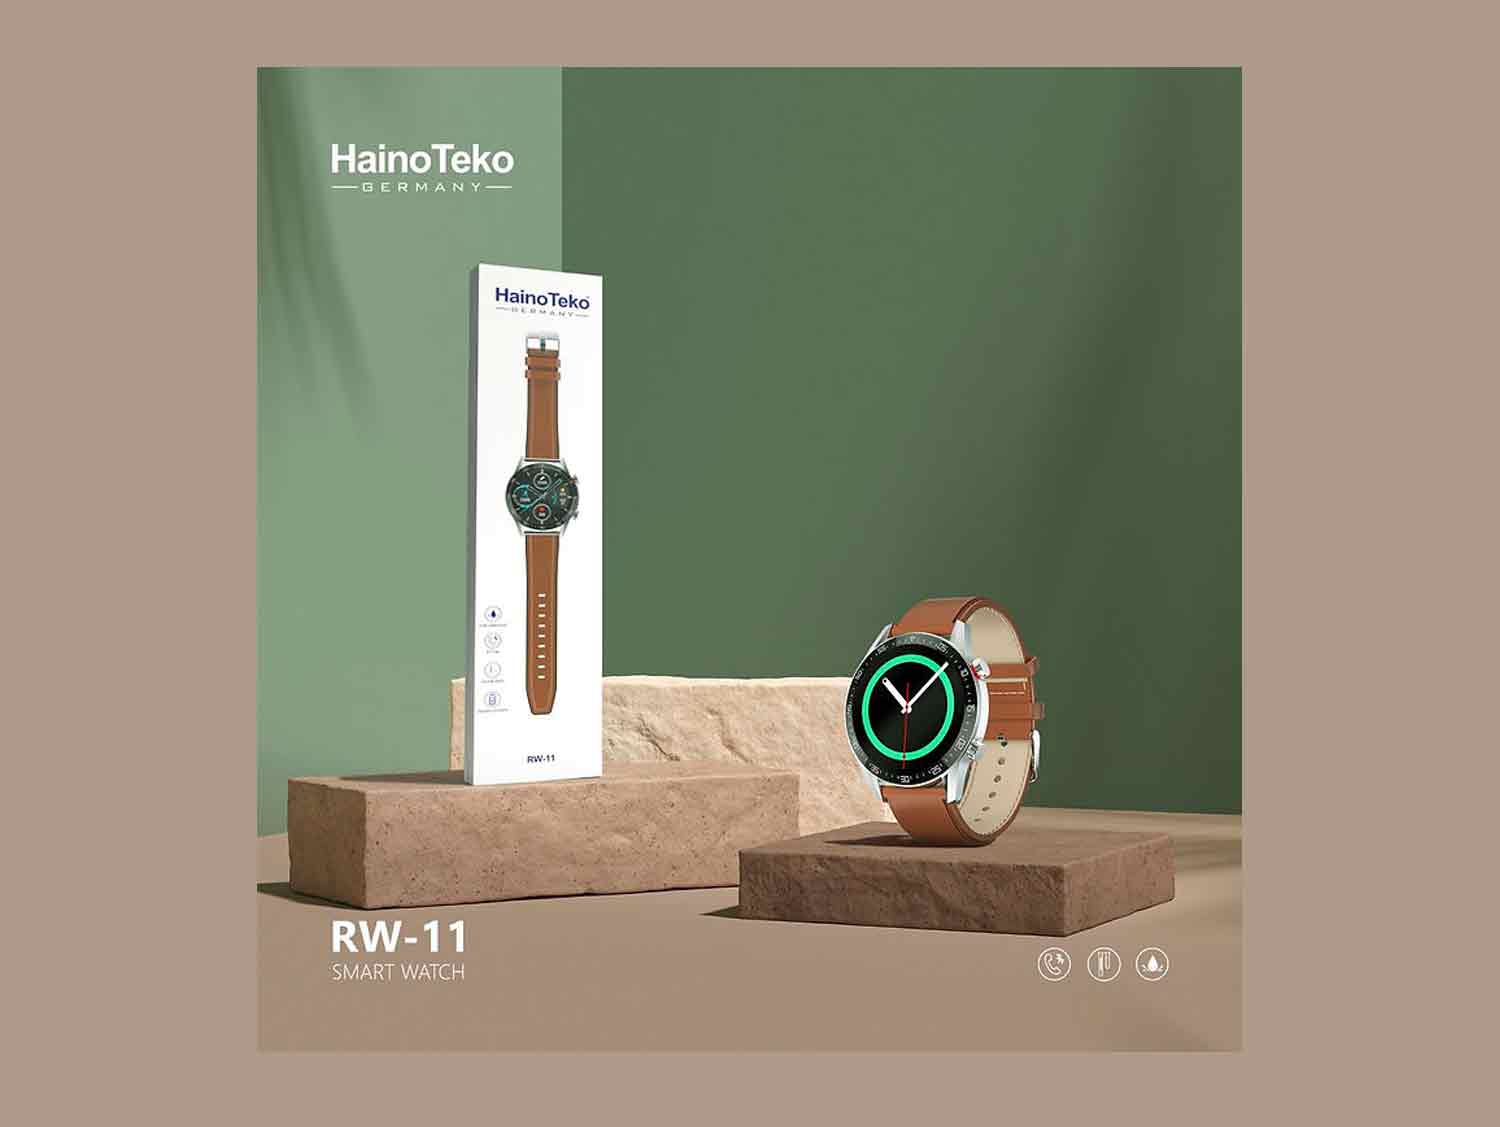 Hainoteko RW-11 Smart Watch showcasing high-resolution display"